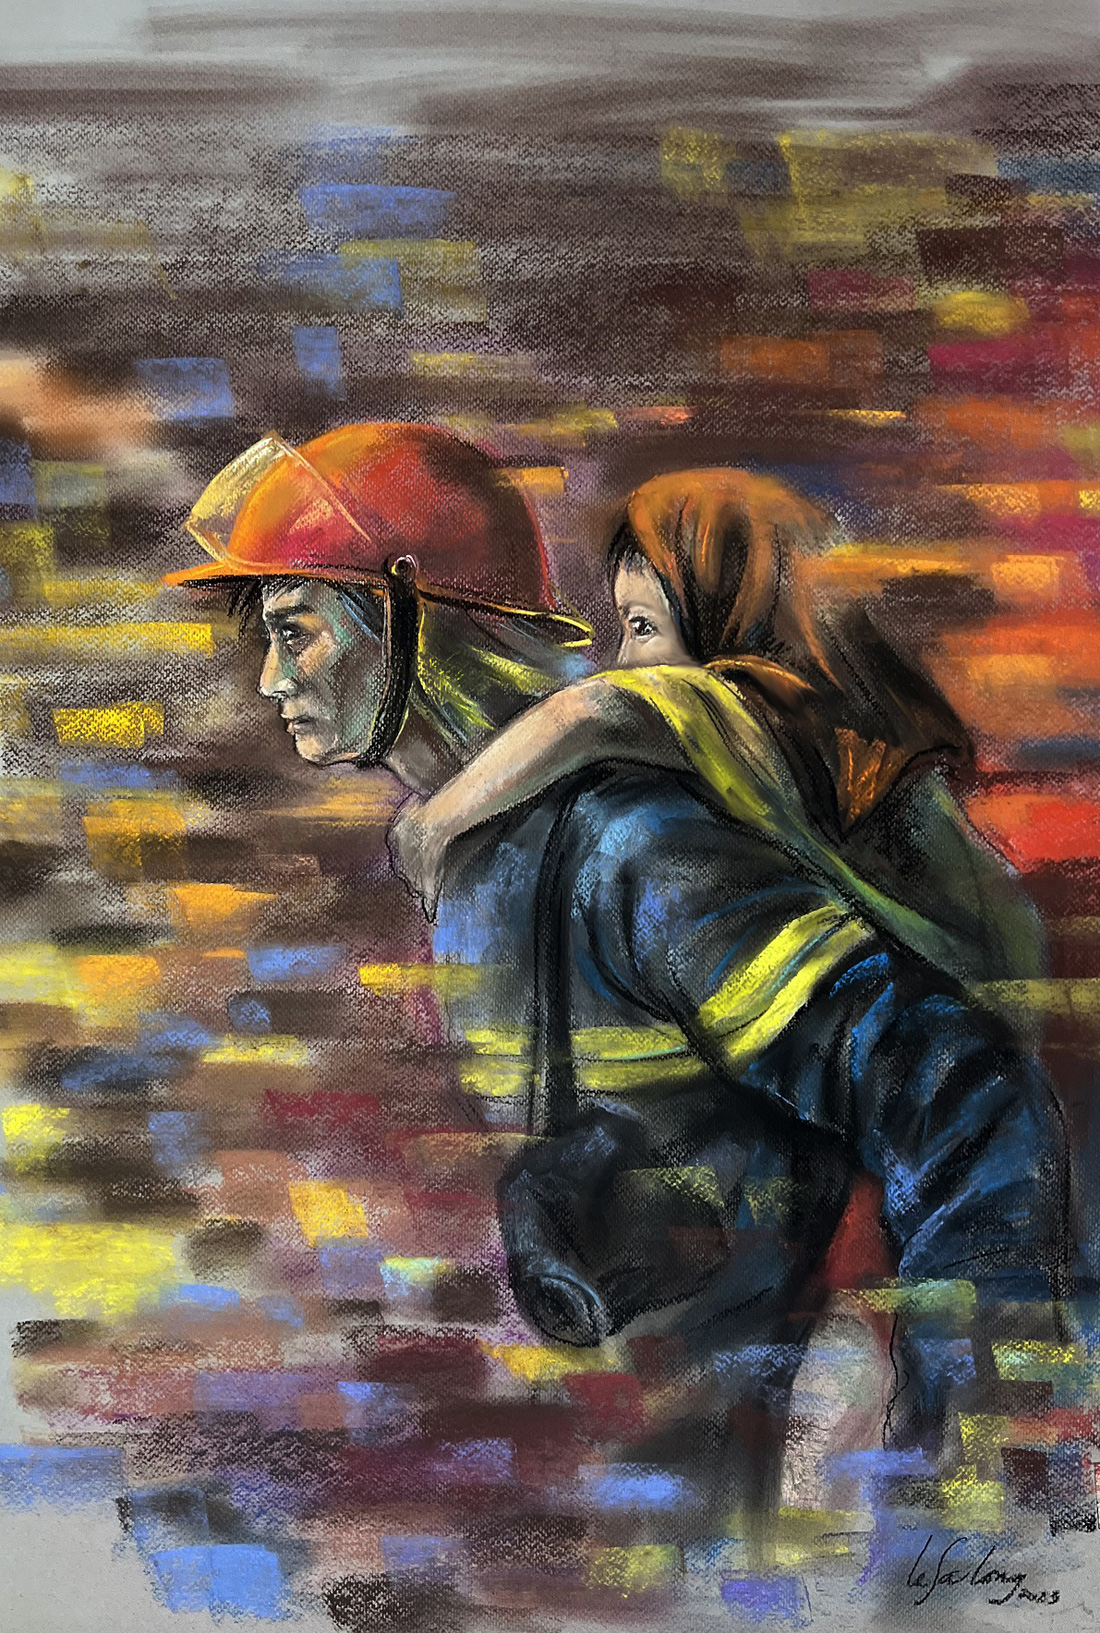 Đây là bức tranh đầu tiên họa sĩ Lê Sa Long vẽ với đong đầy cảm xúc khi cảnh sát phòng cháy chữa cháy đưa cháu bé ra khỏi vụ cháy an toàn